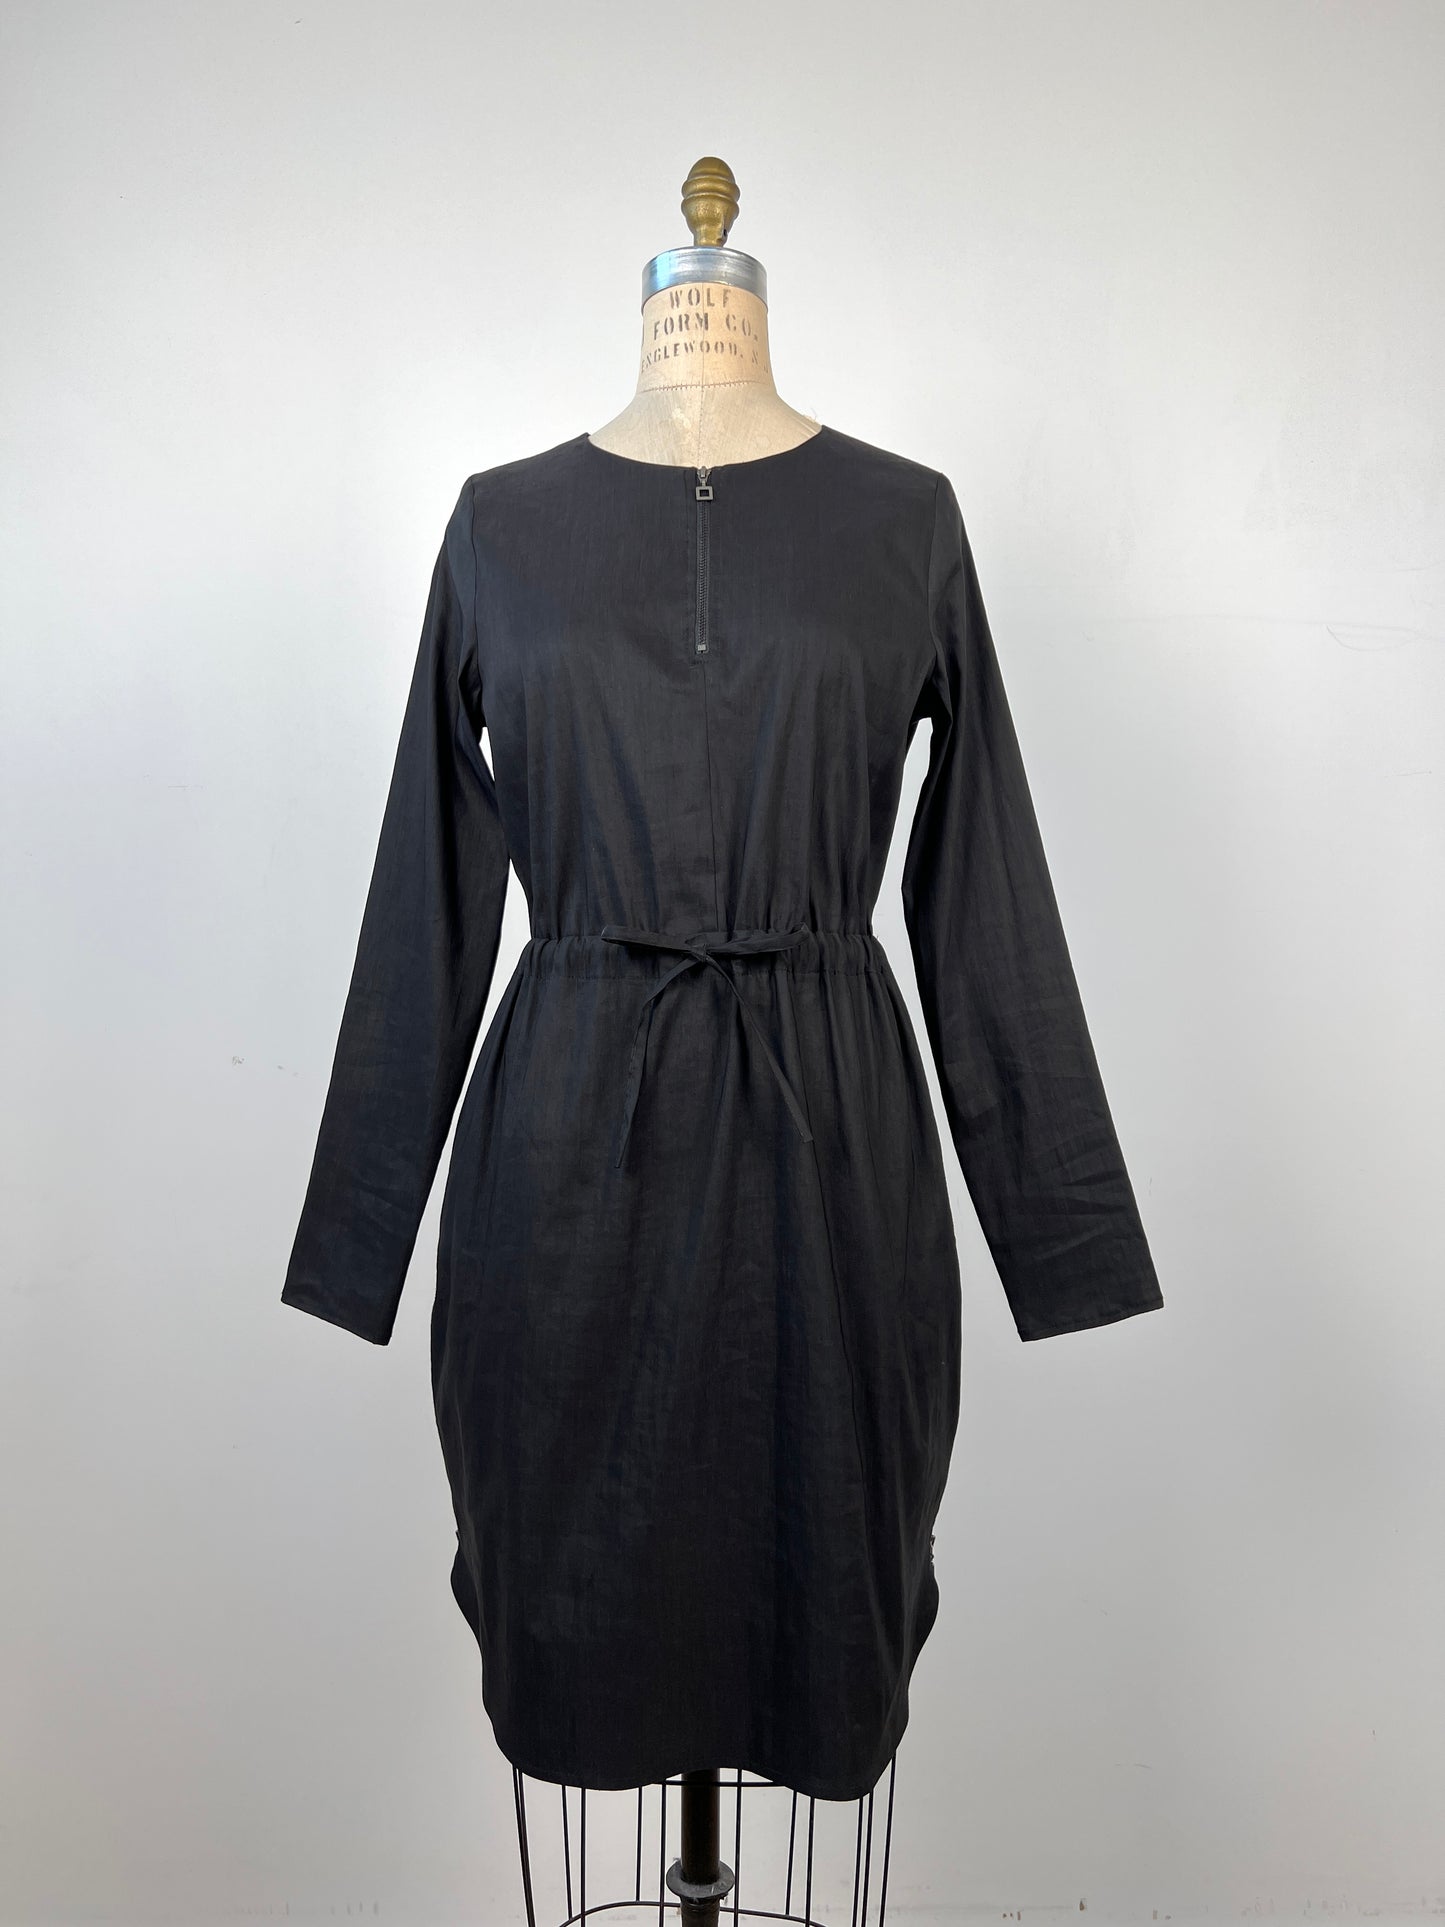 Robe noire ajustable en lin technique 4 saisons (S)